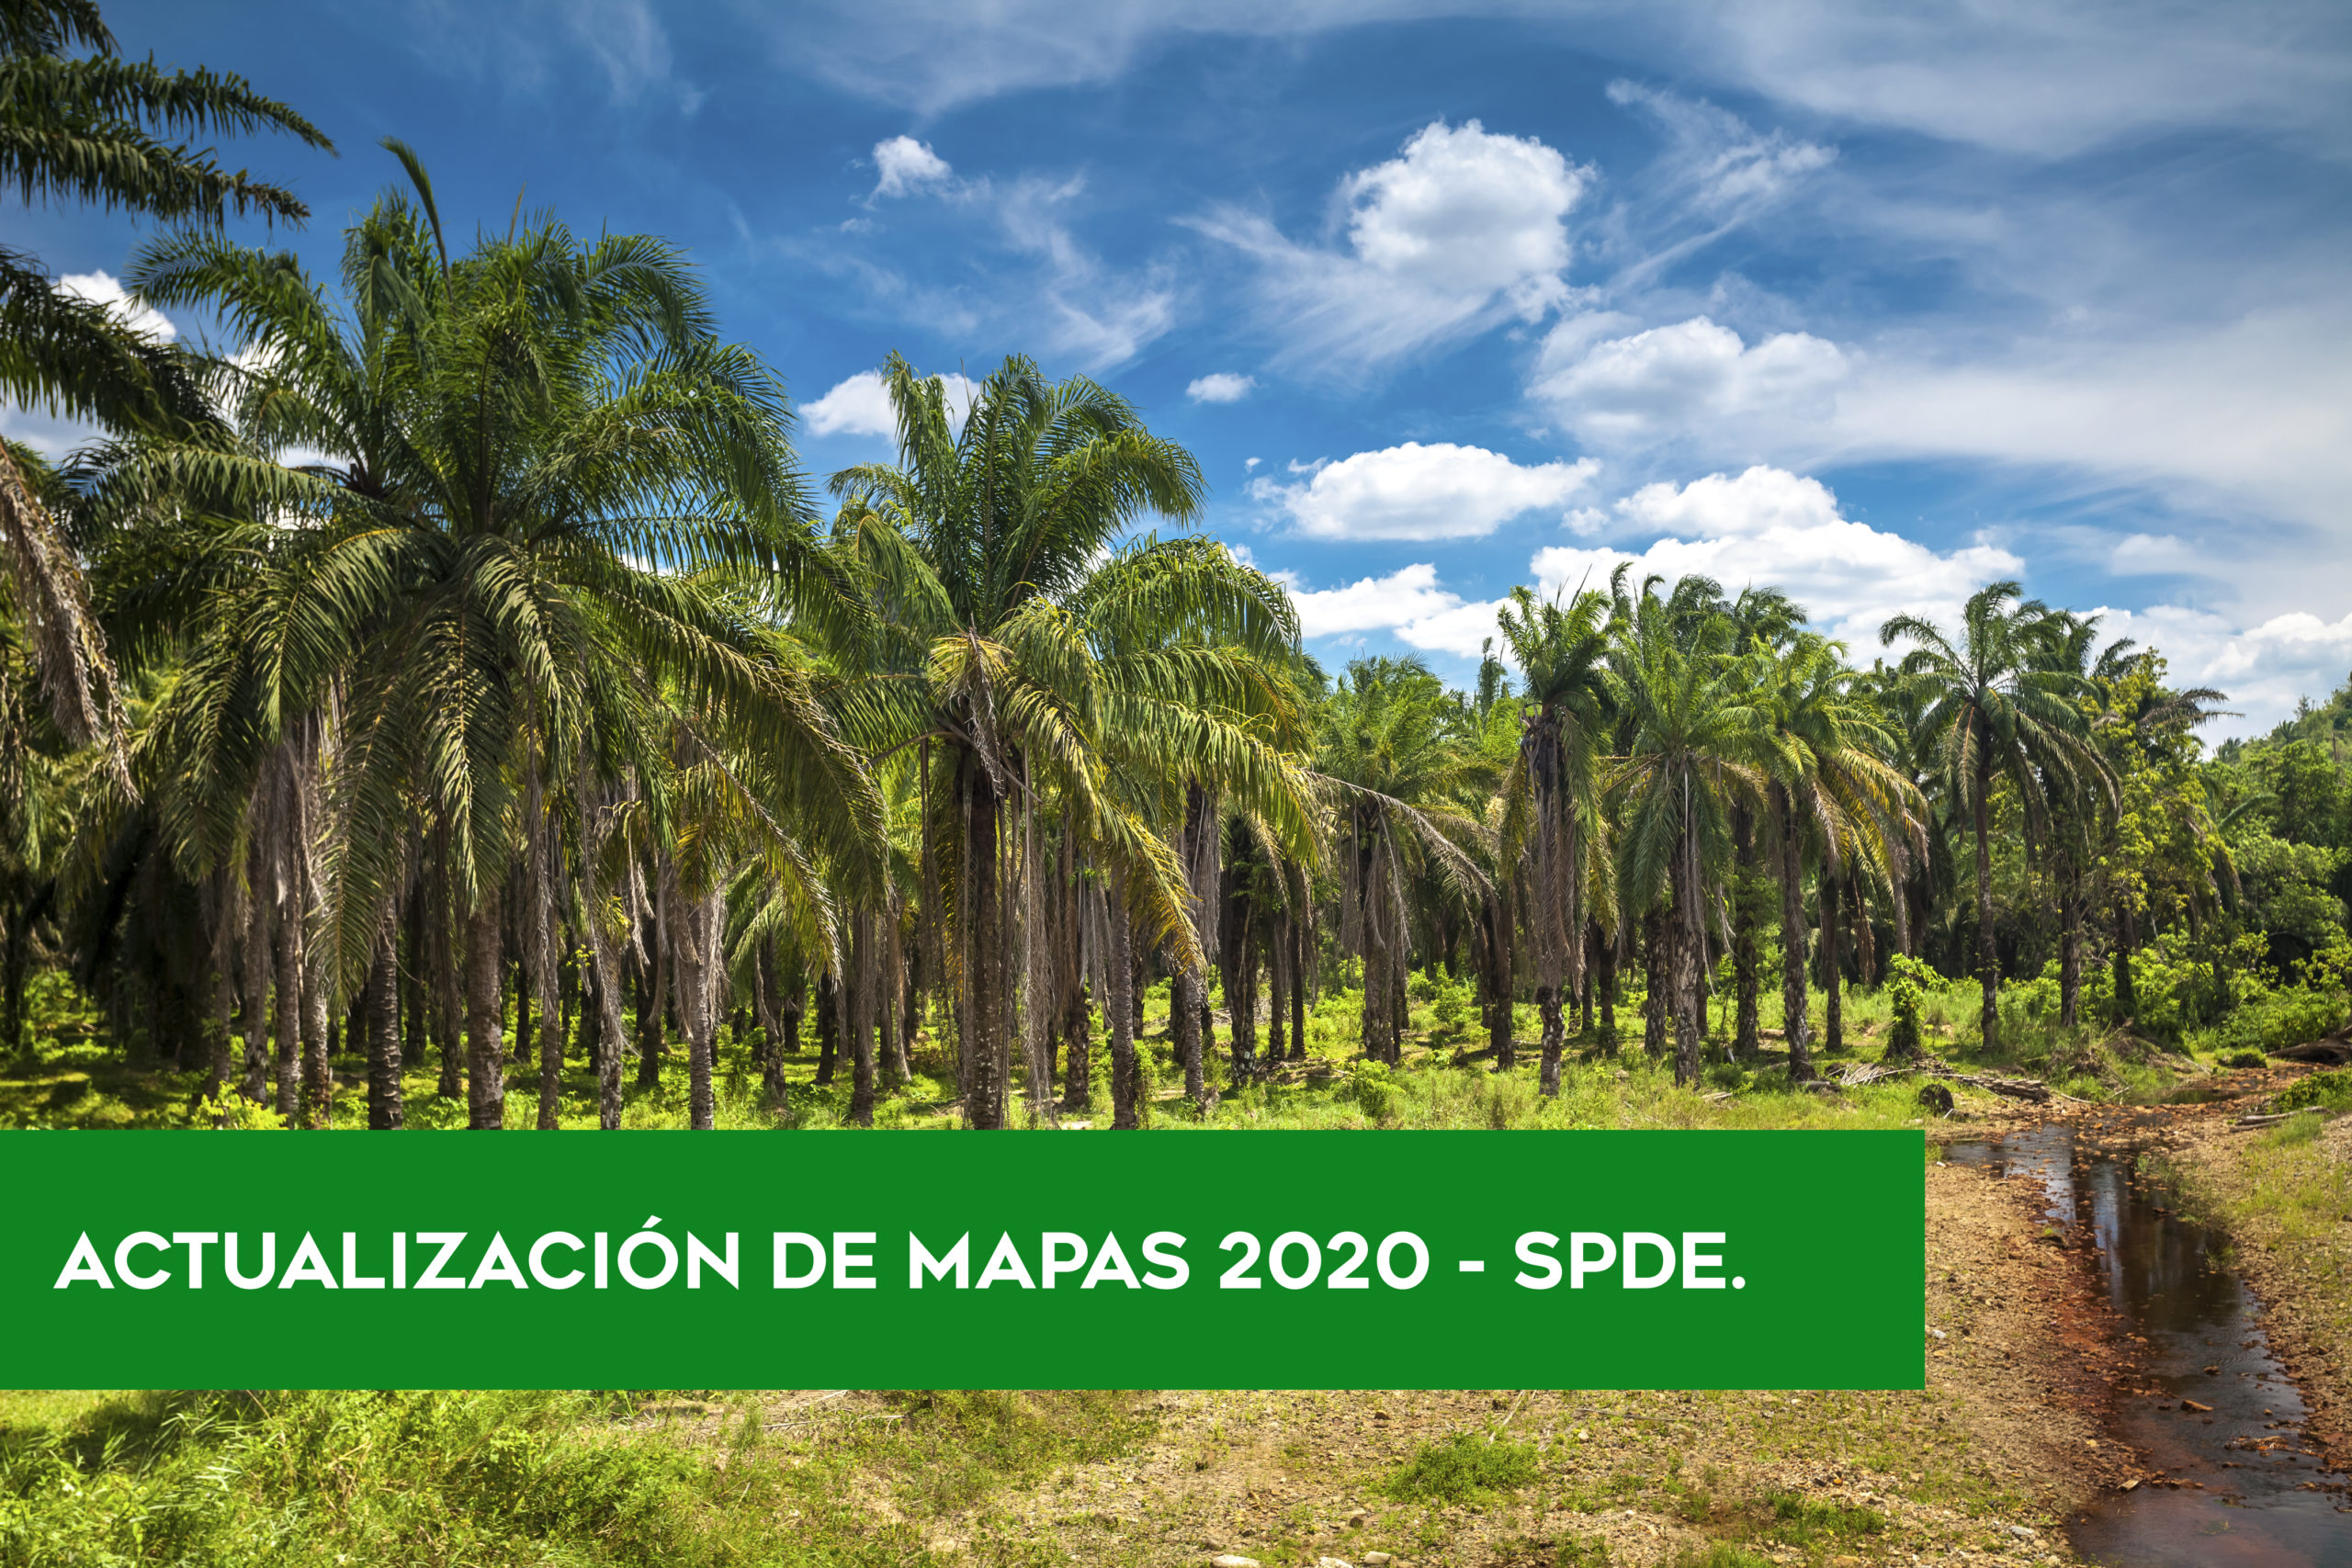 (Español) ACTUALIZACIÓN DE MAPAS DE PALMA ACEITERA 2020 – SPDE.